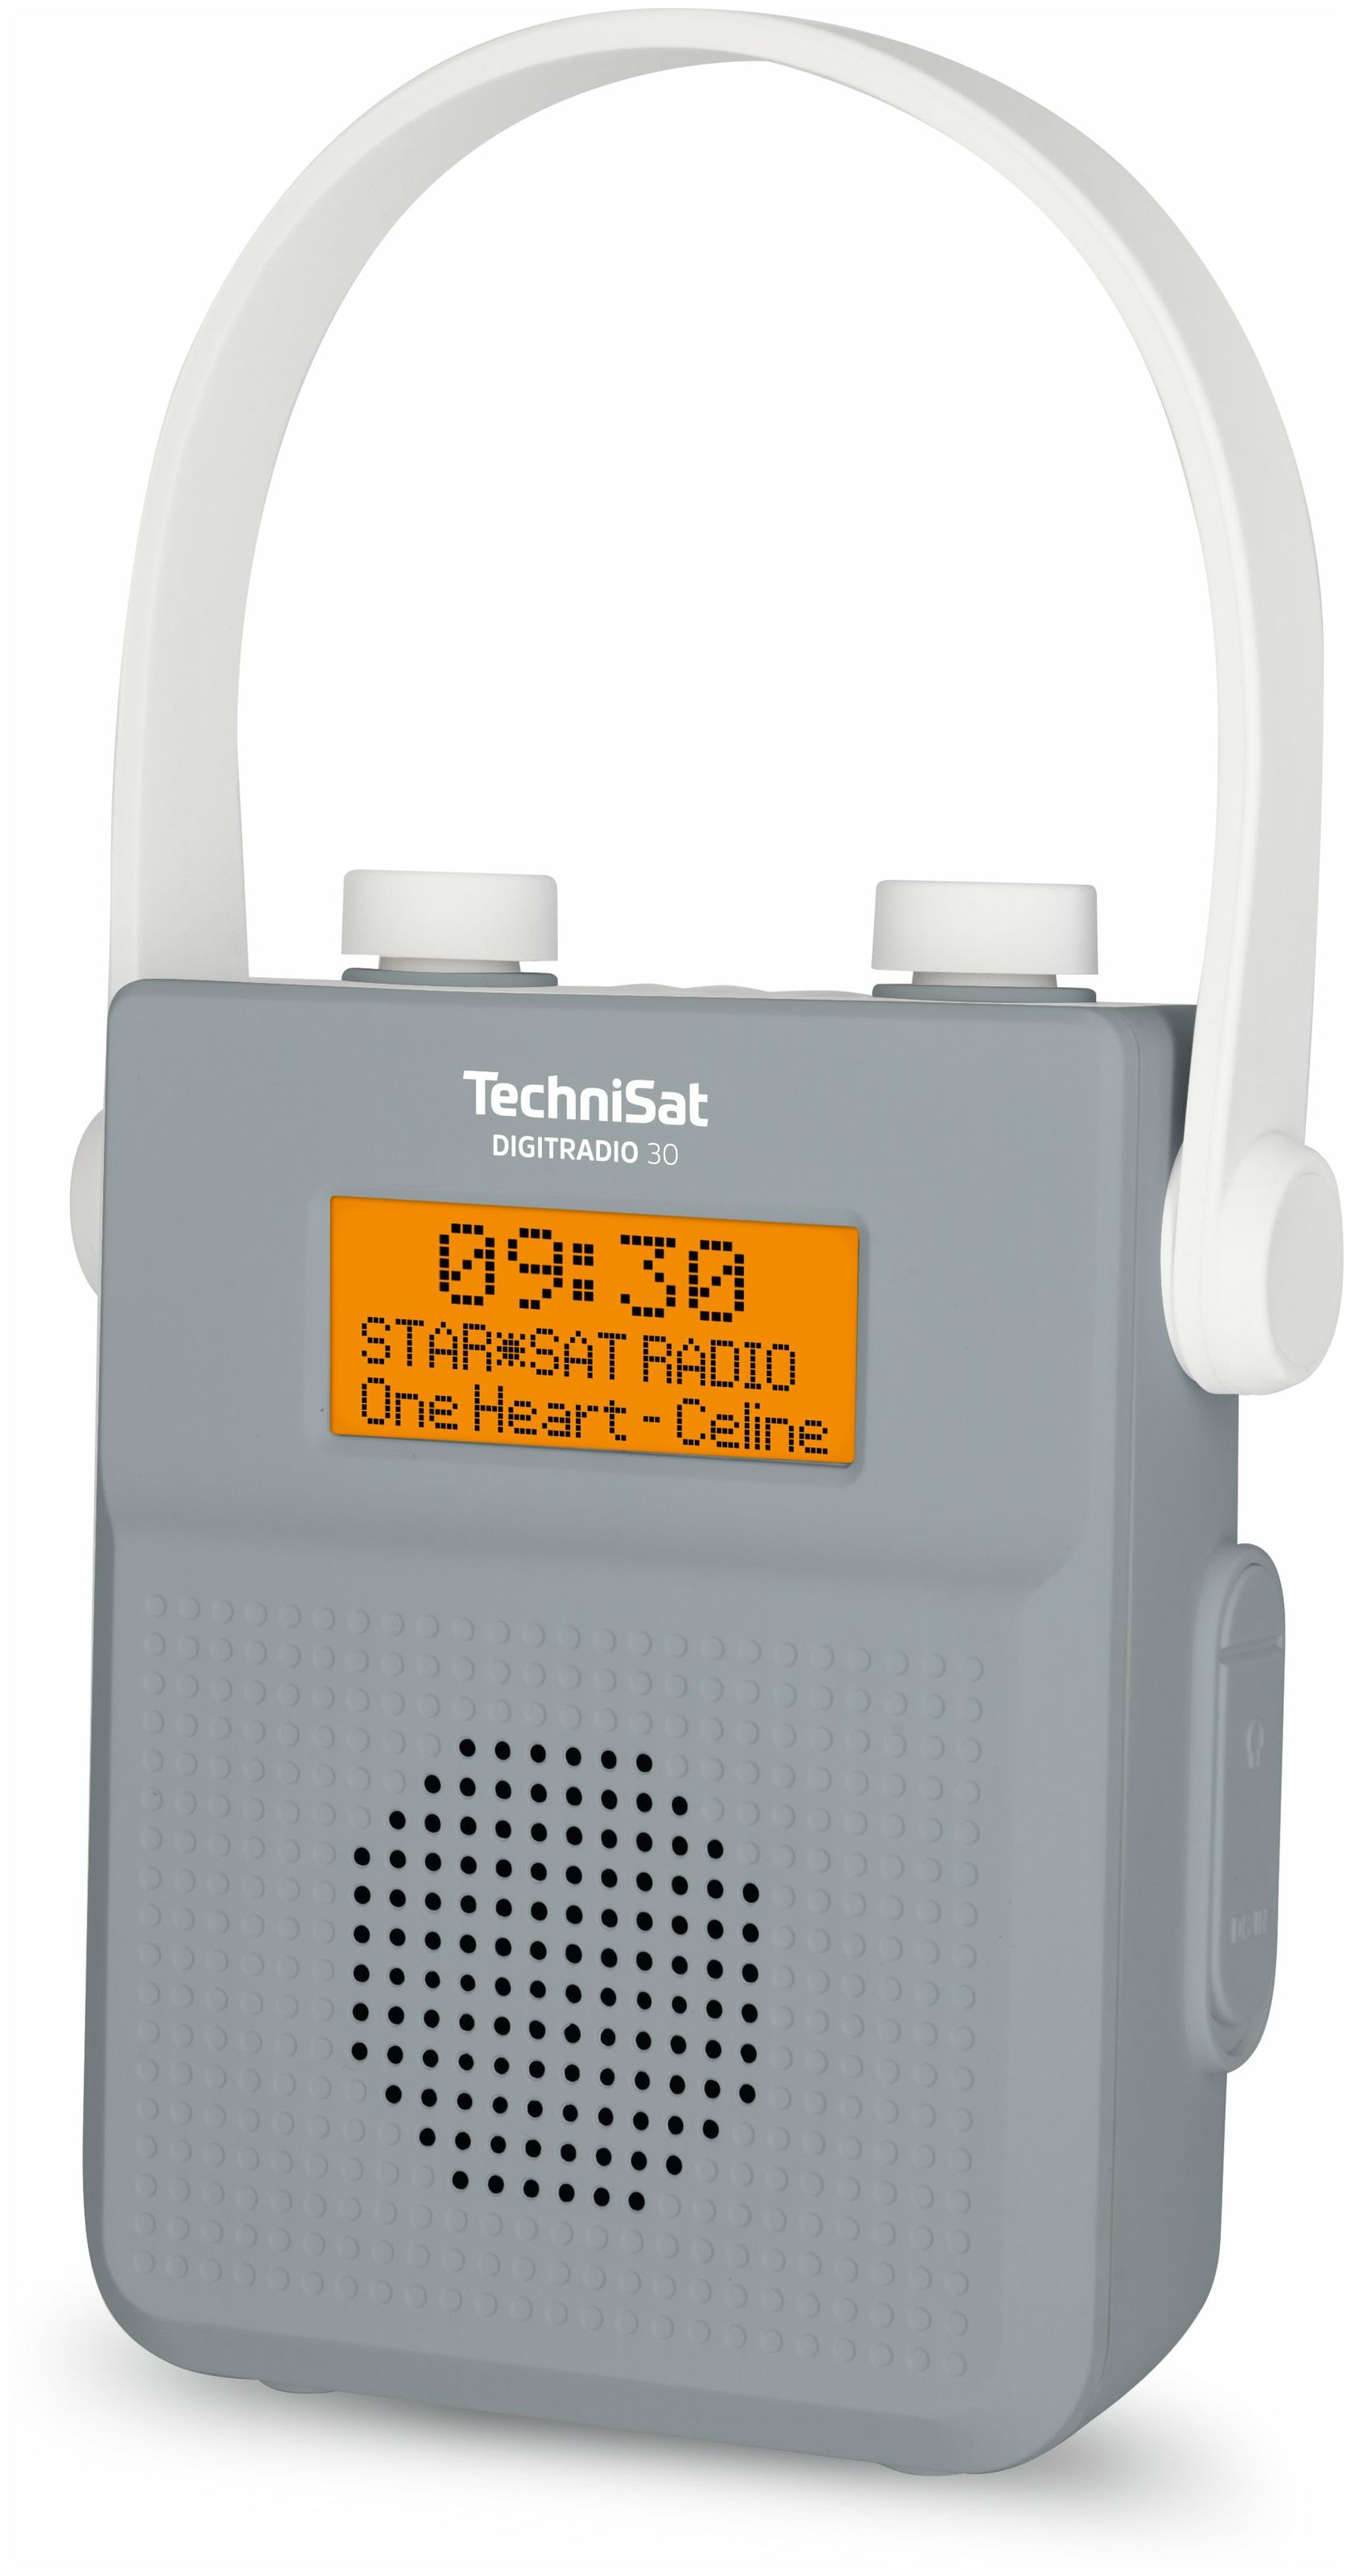 FM expert (Grau) TechniSat Bluetooth IPX5 Digitradio Radio von Technomarkt 30 Tragbar DAB+,